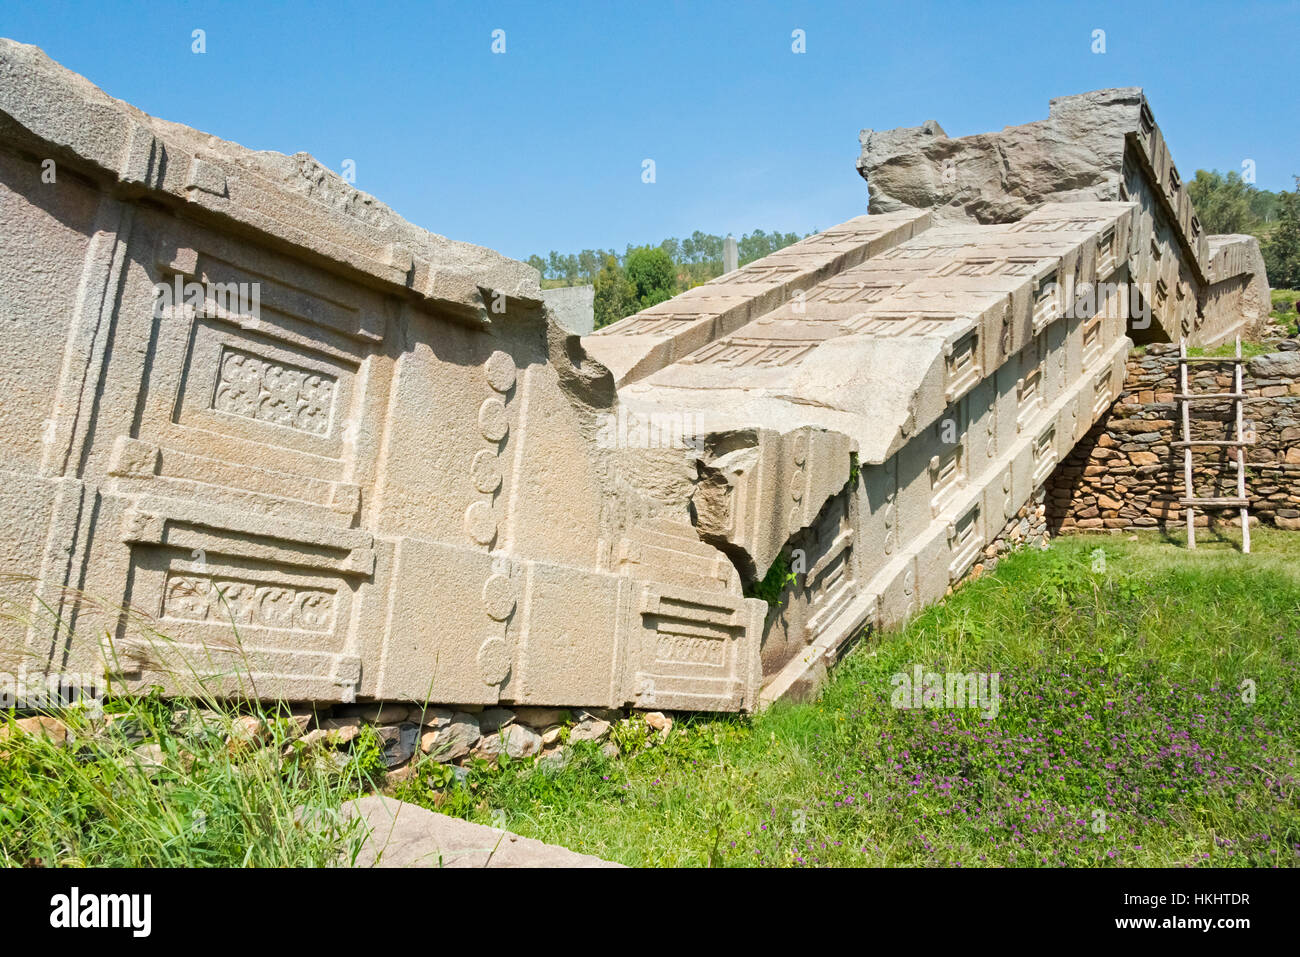 Die größte Aksumite Stele, gebrochen, wo er fiel, die Ruinen der antiken Stadt Aksum, UNESCO-Weltkulturerbe, Äthiopien Stockfoto